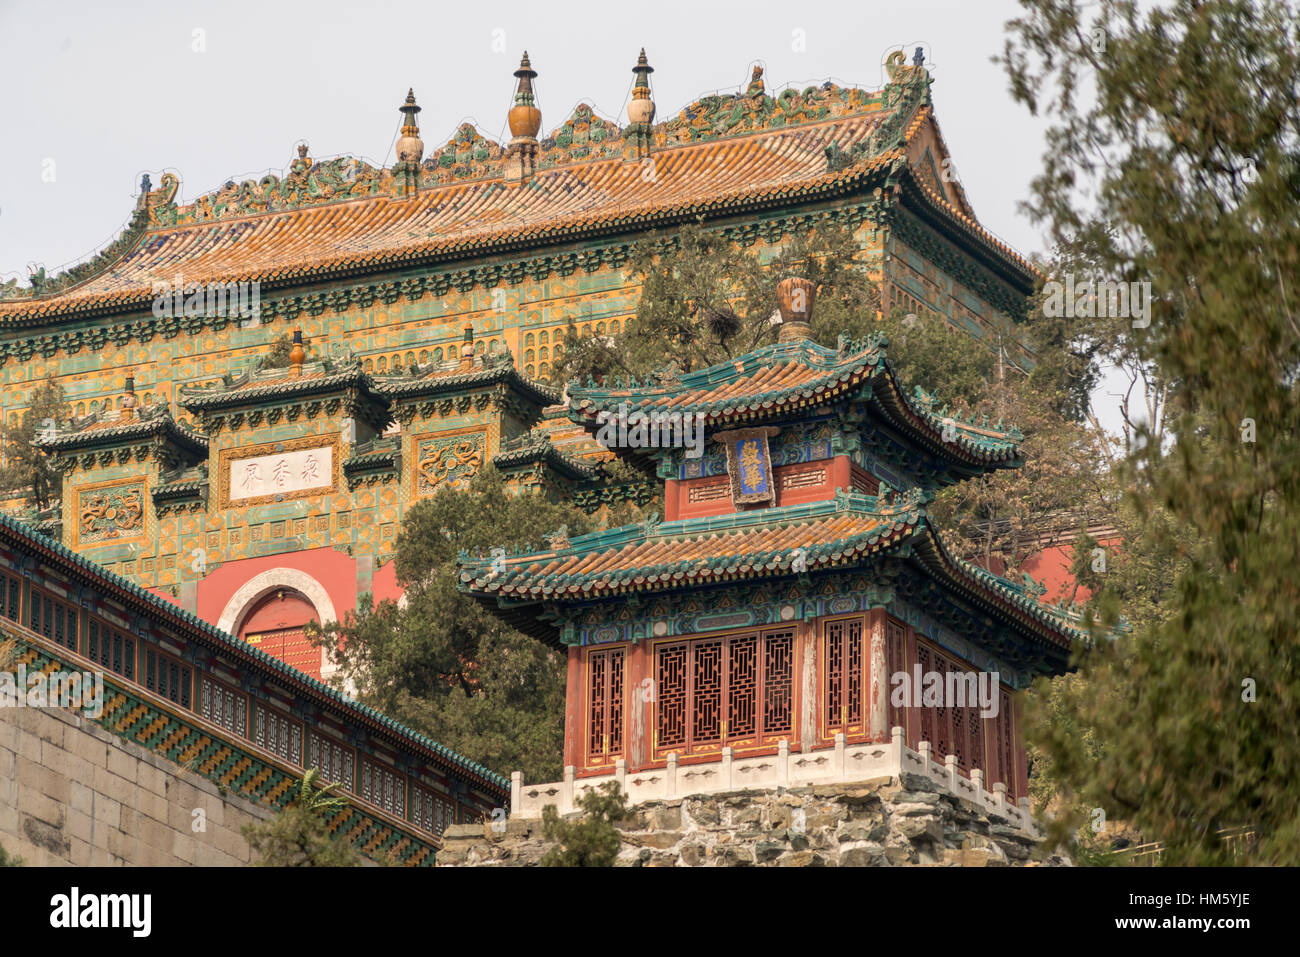 La colline de la longévité, Summer Palace, Beijing, République populaire de Chine, l'Asie Banque D'Images